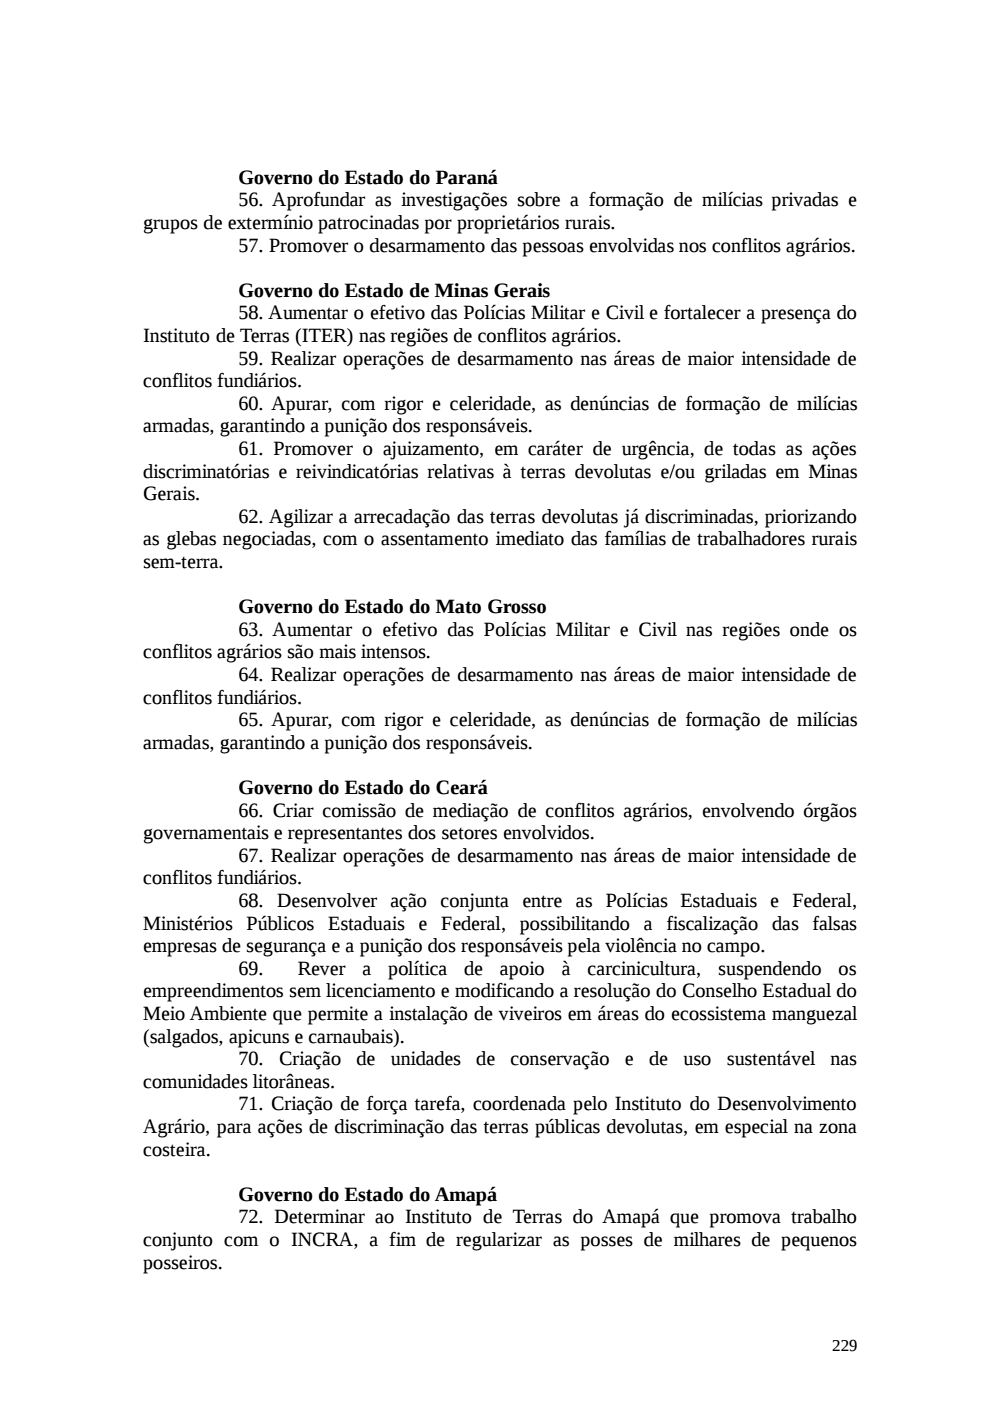 Page 229 from Relatório final da comissão